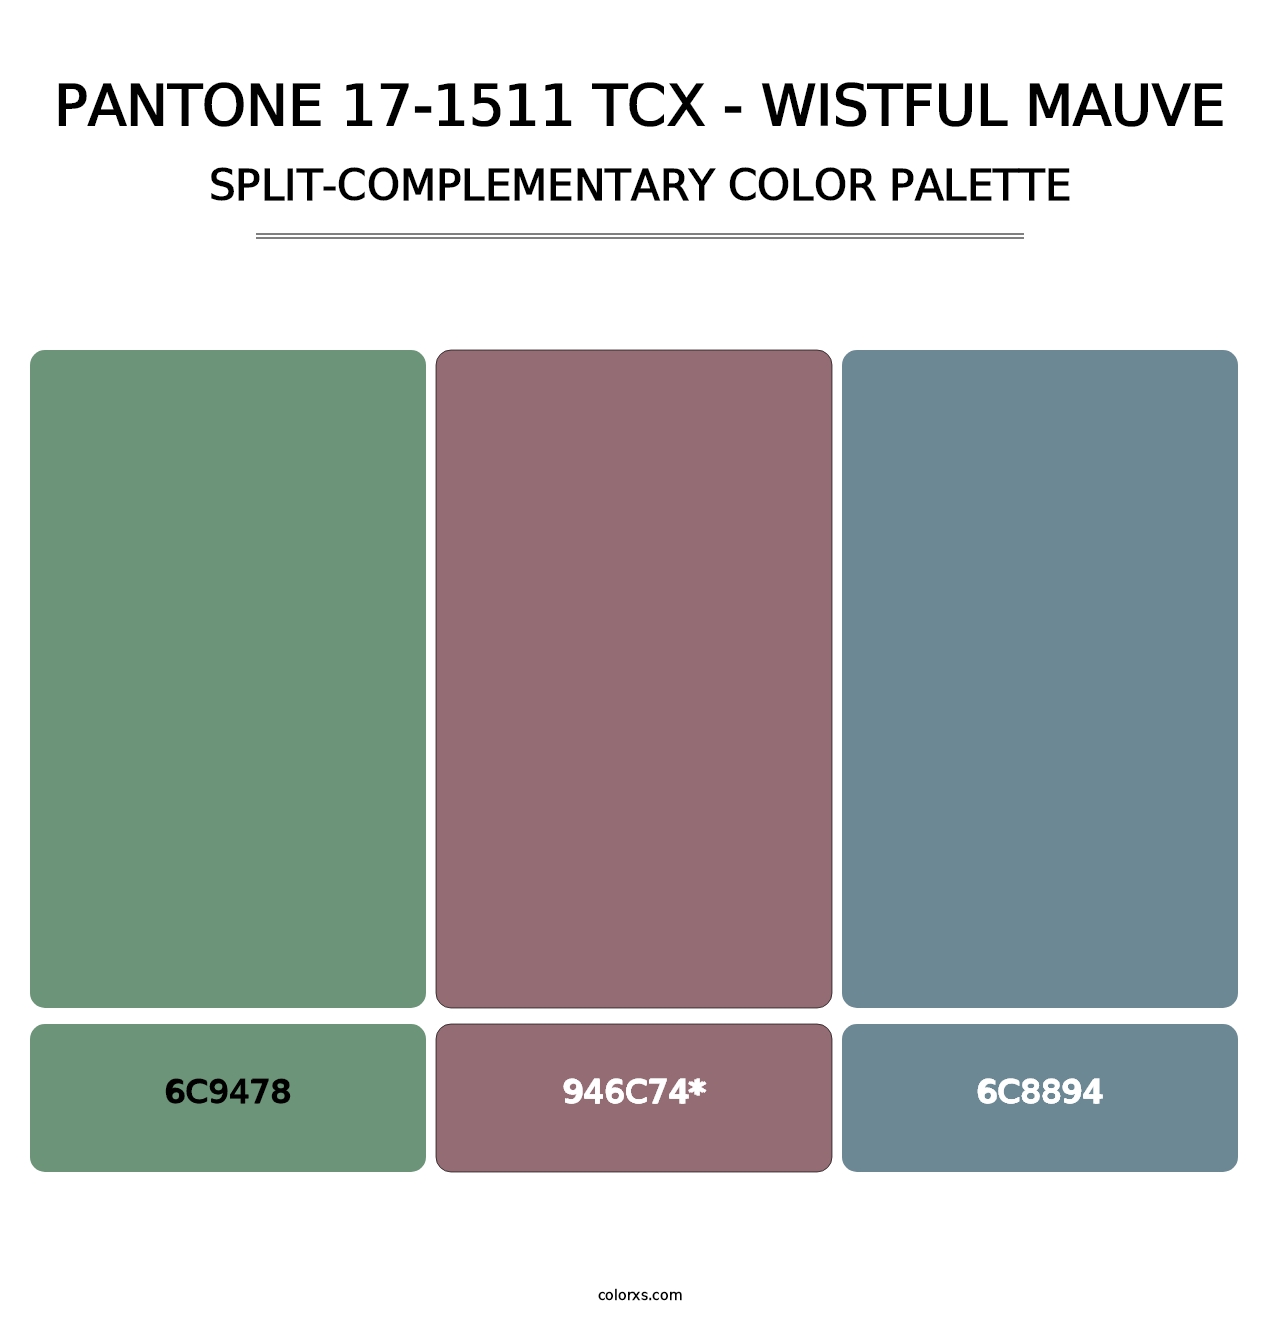 PANTONE 17-1511 TCX - Wistful Mauve - Split-Complementary Color Palette